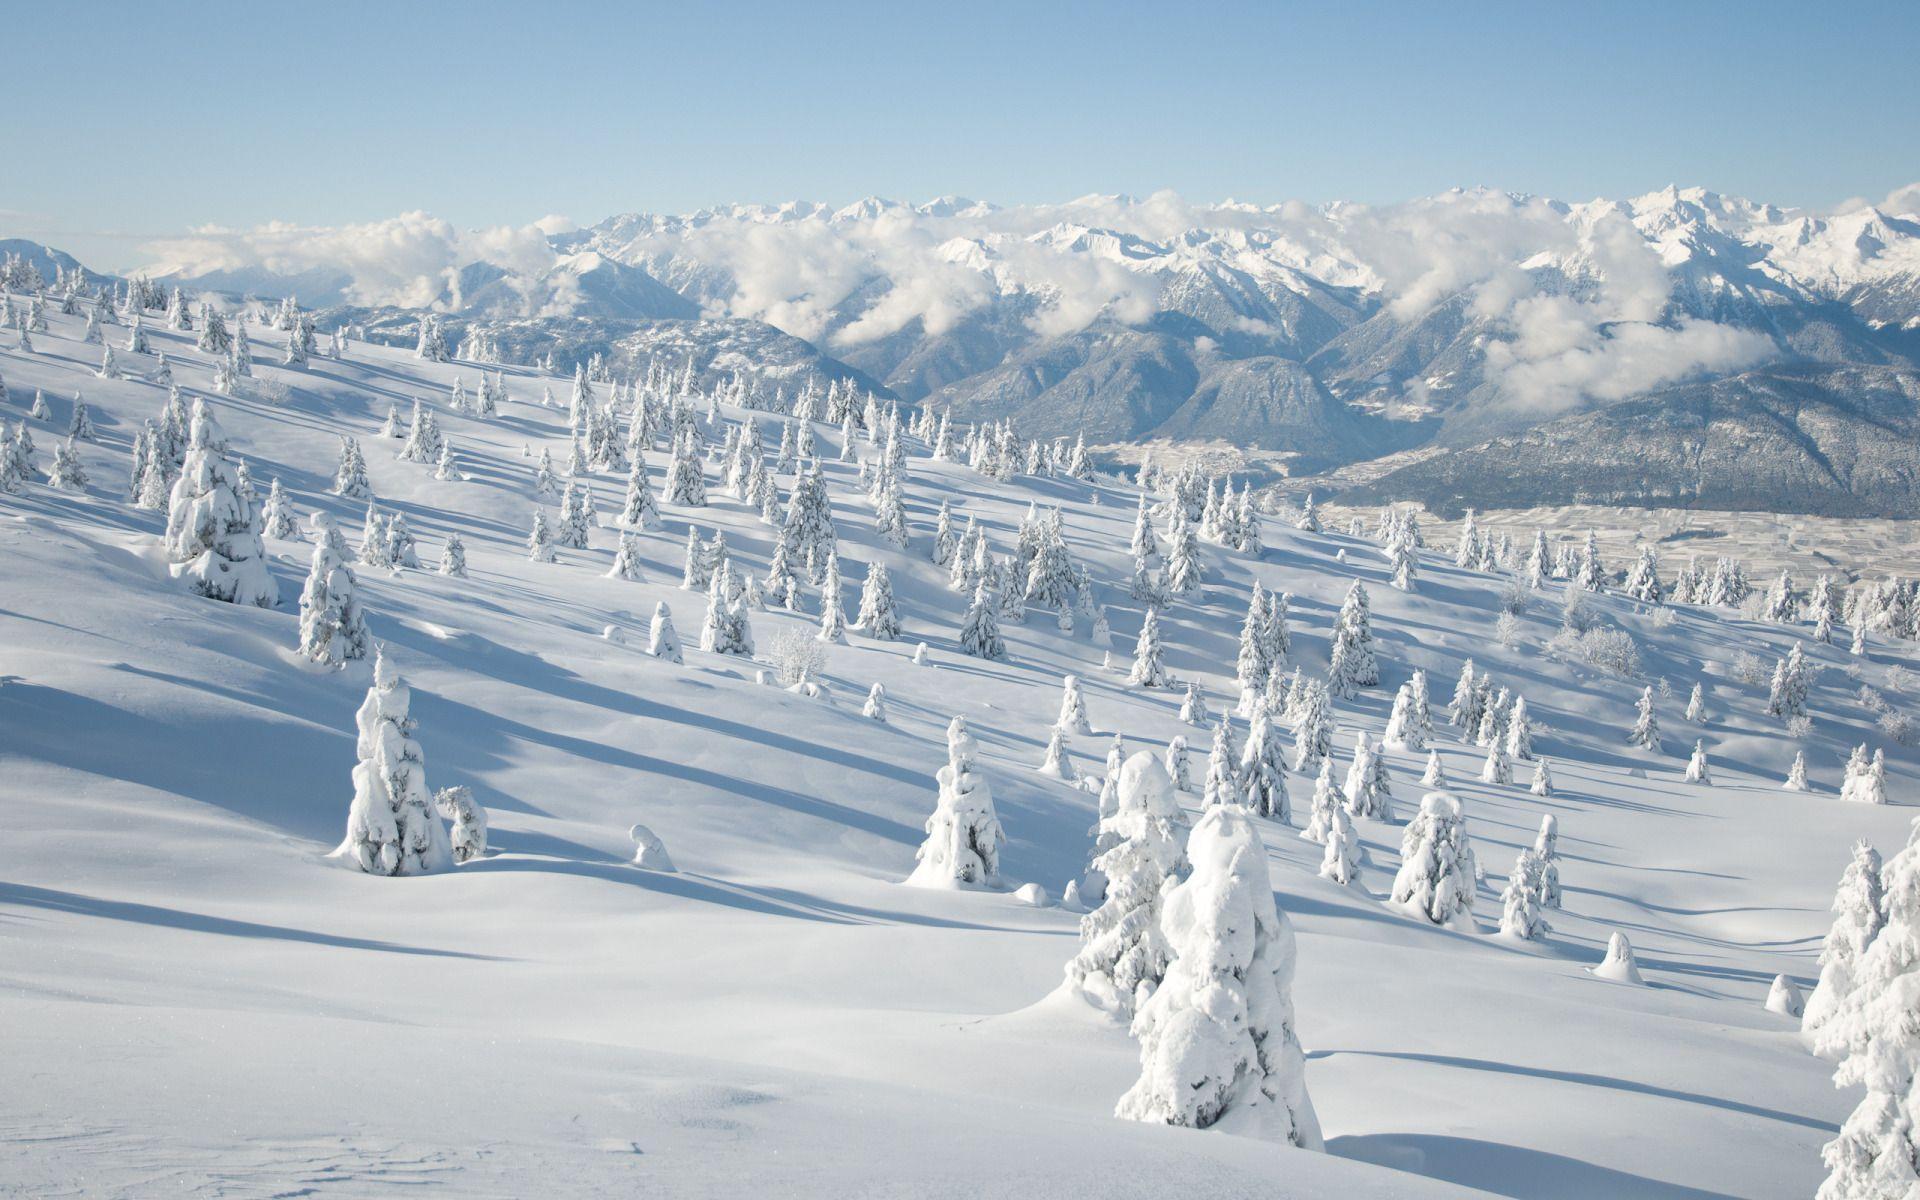 Winter Mountain For Facebook Cover Wallpaper. maswallpaper